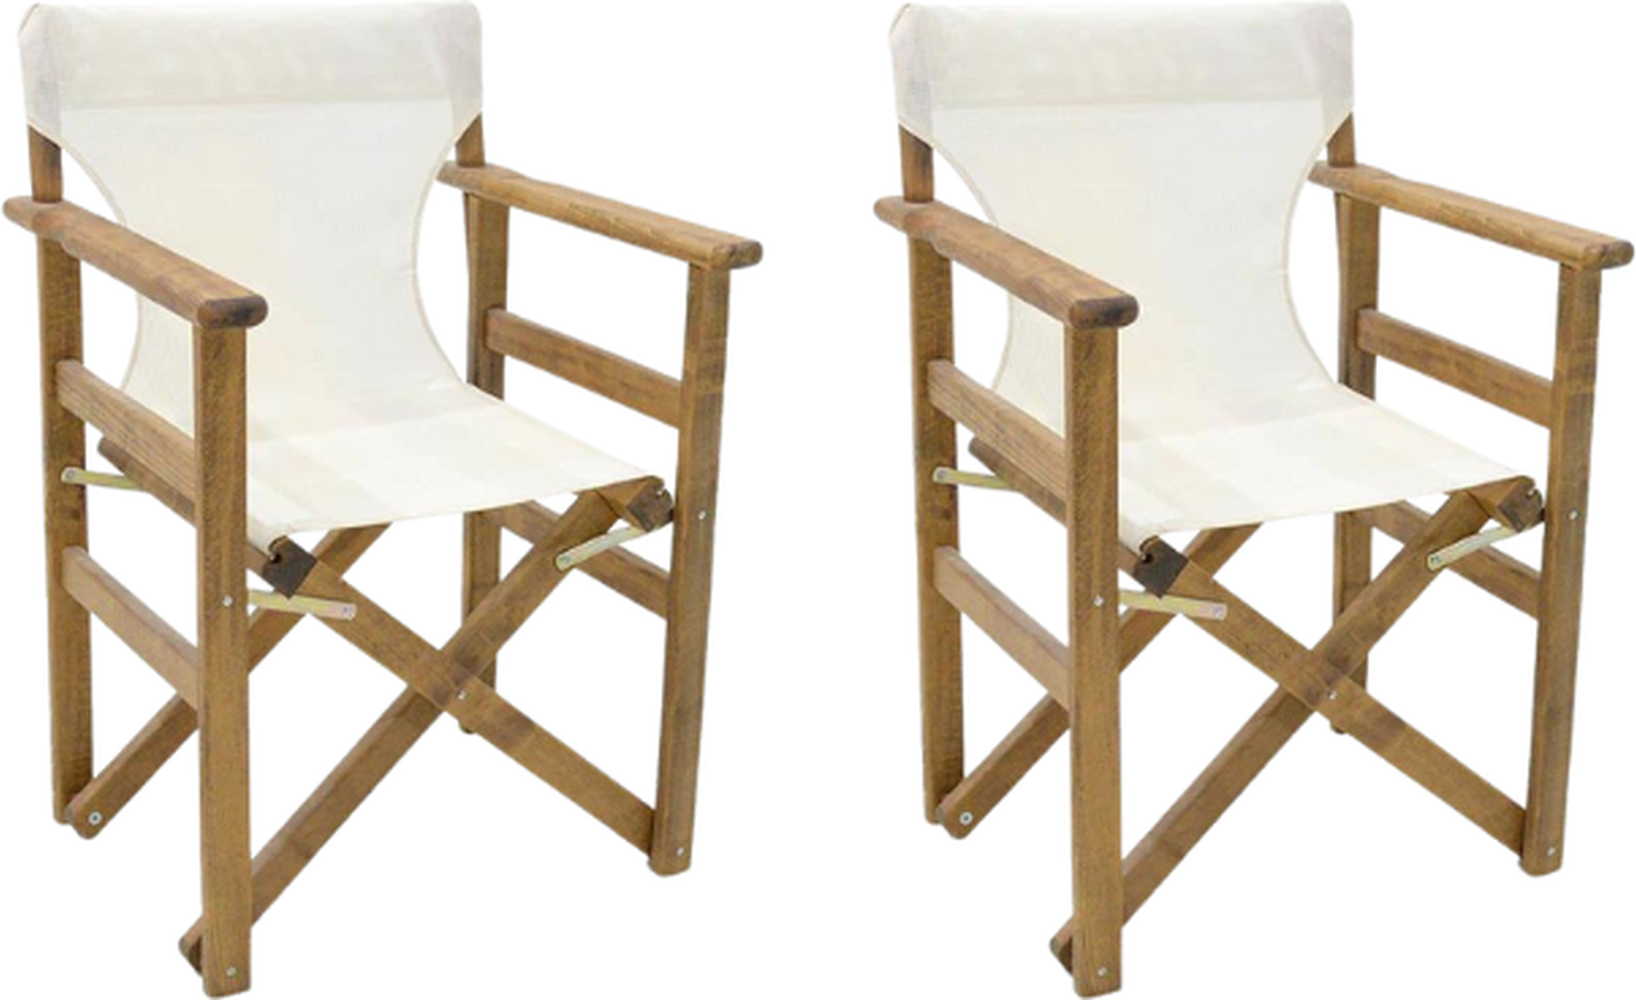 折叠式花园扶手椅空间胡桃木白色61x51x86cm套装2个。